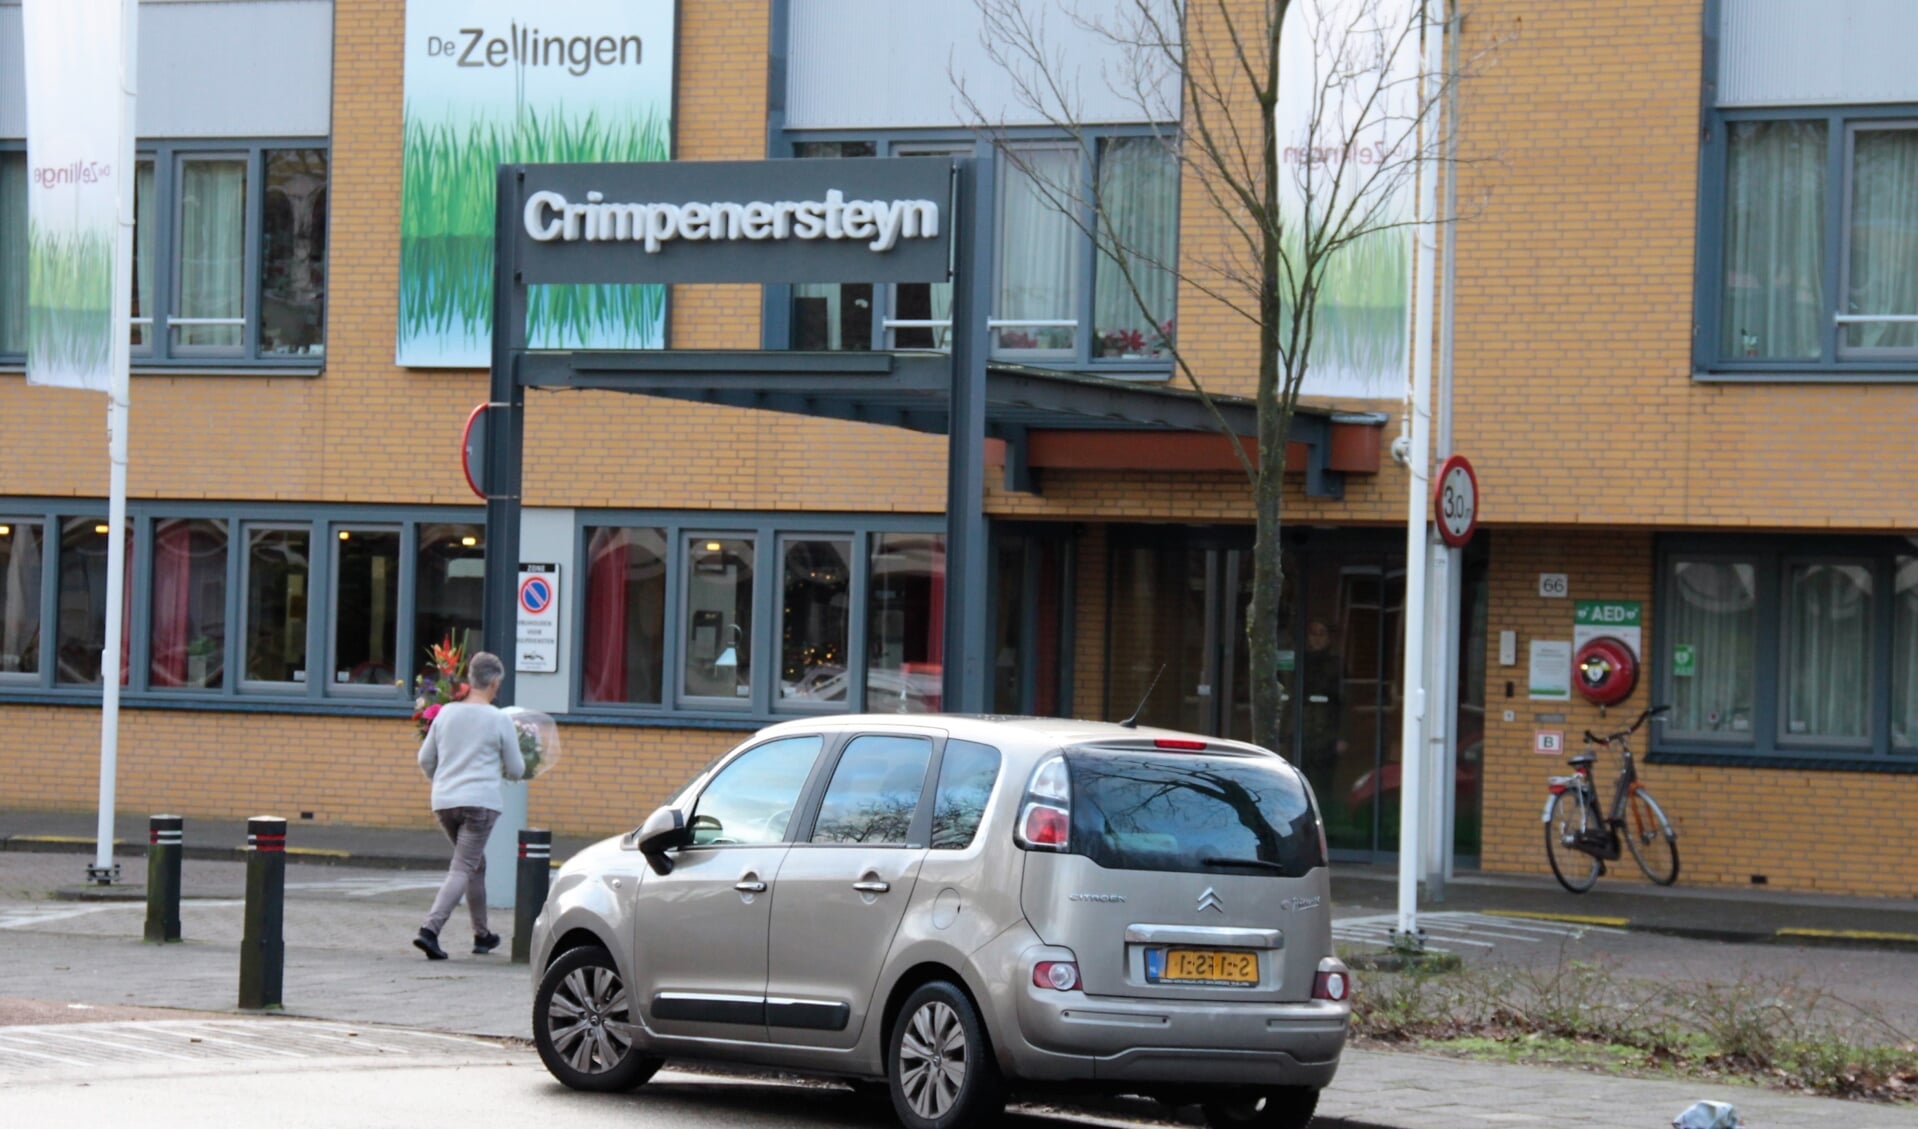 • Entree van zorgcentrum Crimpenersteyn in Krimpen aan den IJssel.